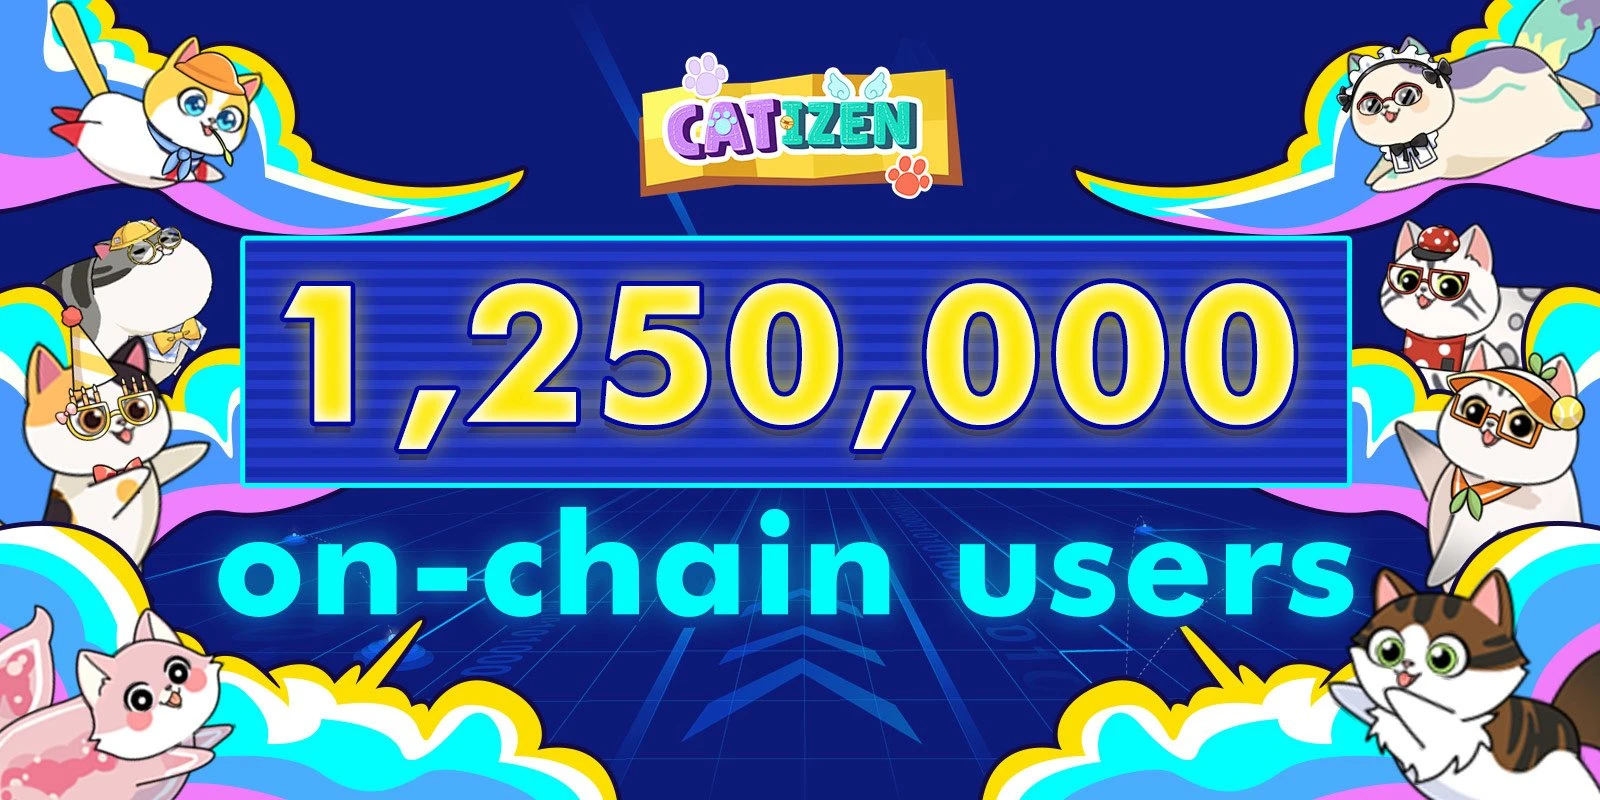 注册用户近2000万，手把手带你参与TON生态爆款游戏Catizen「GameFi猎手」